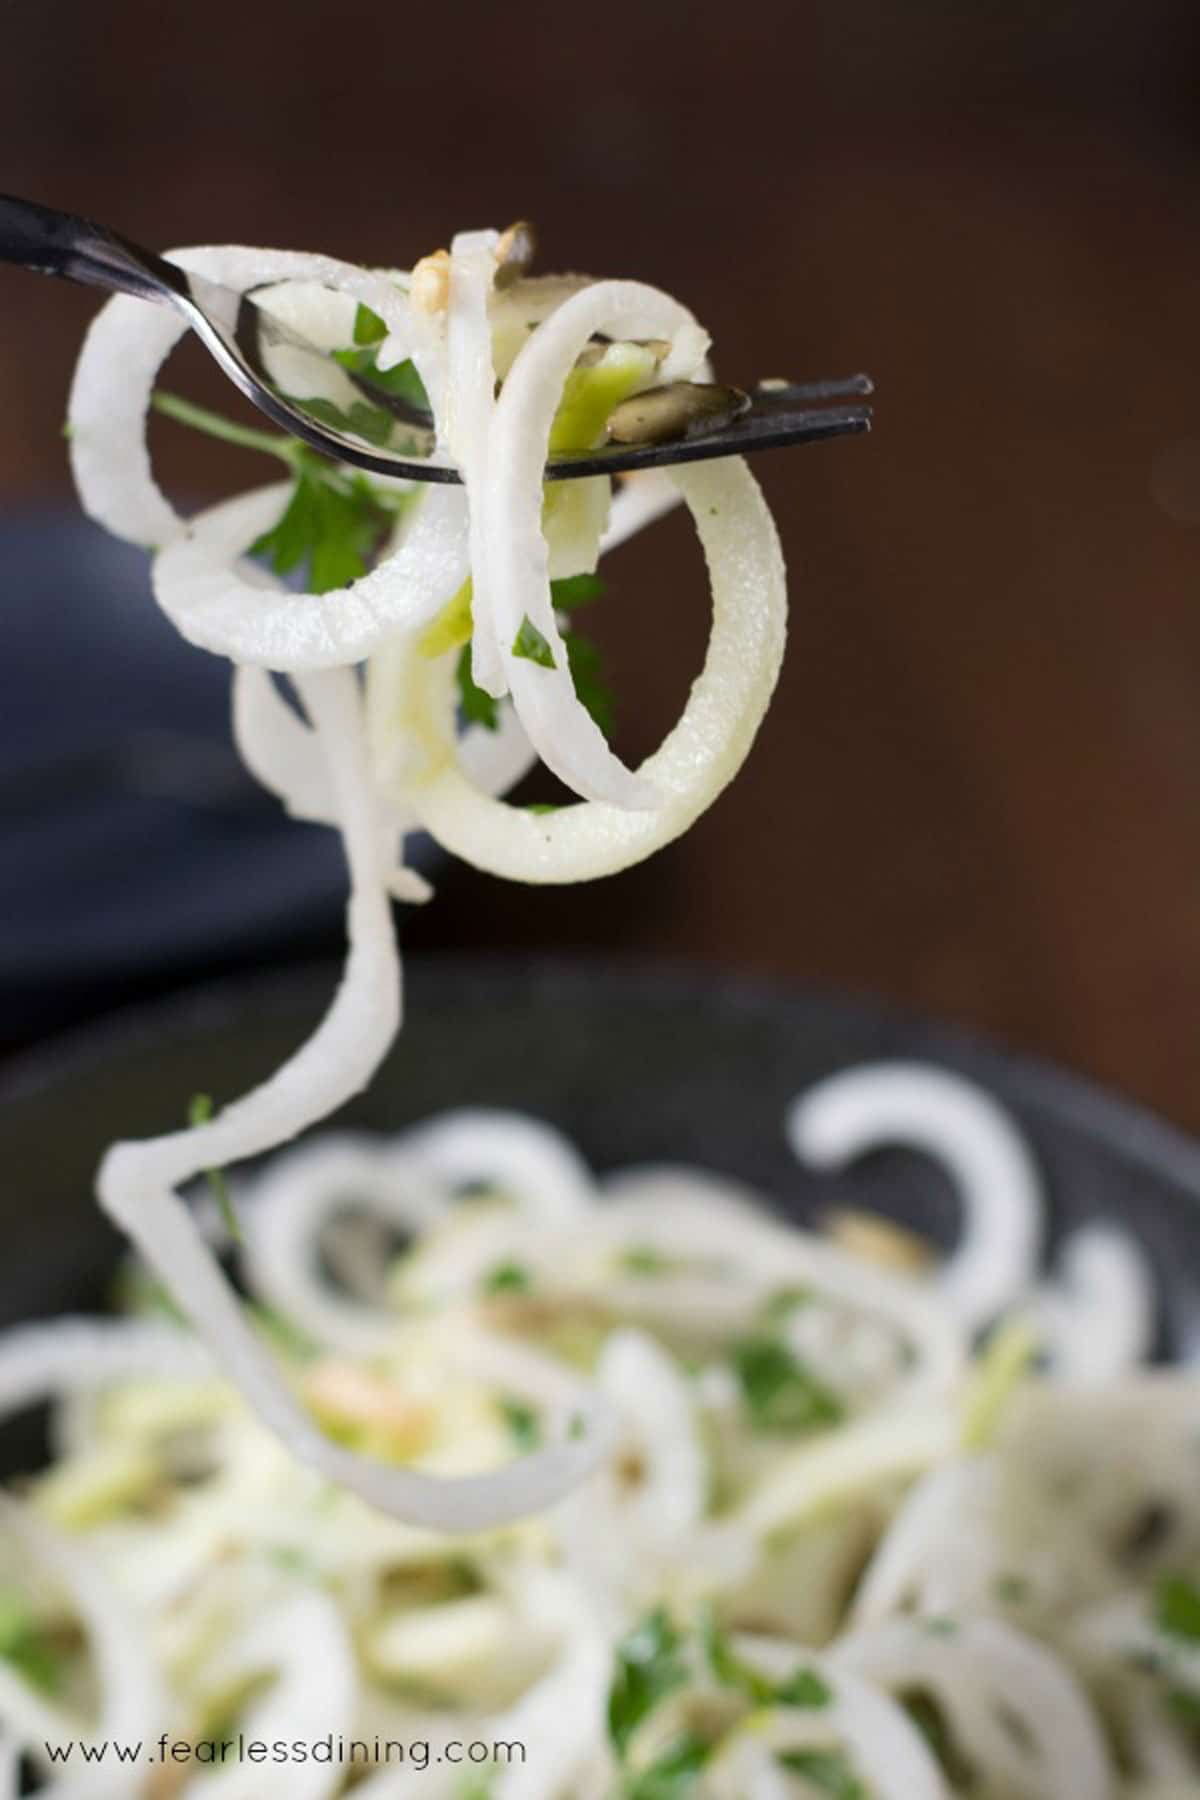 a fork full of daikon salad spirals